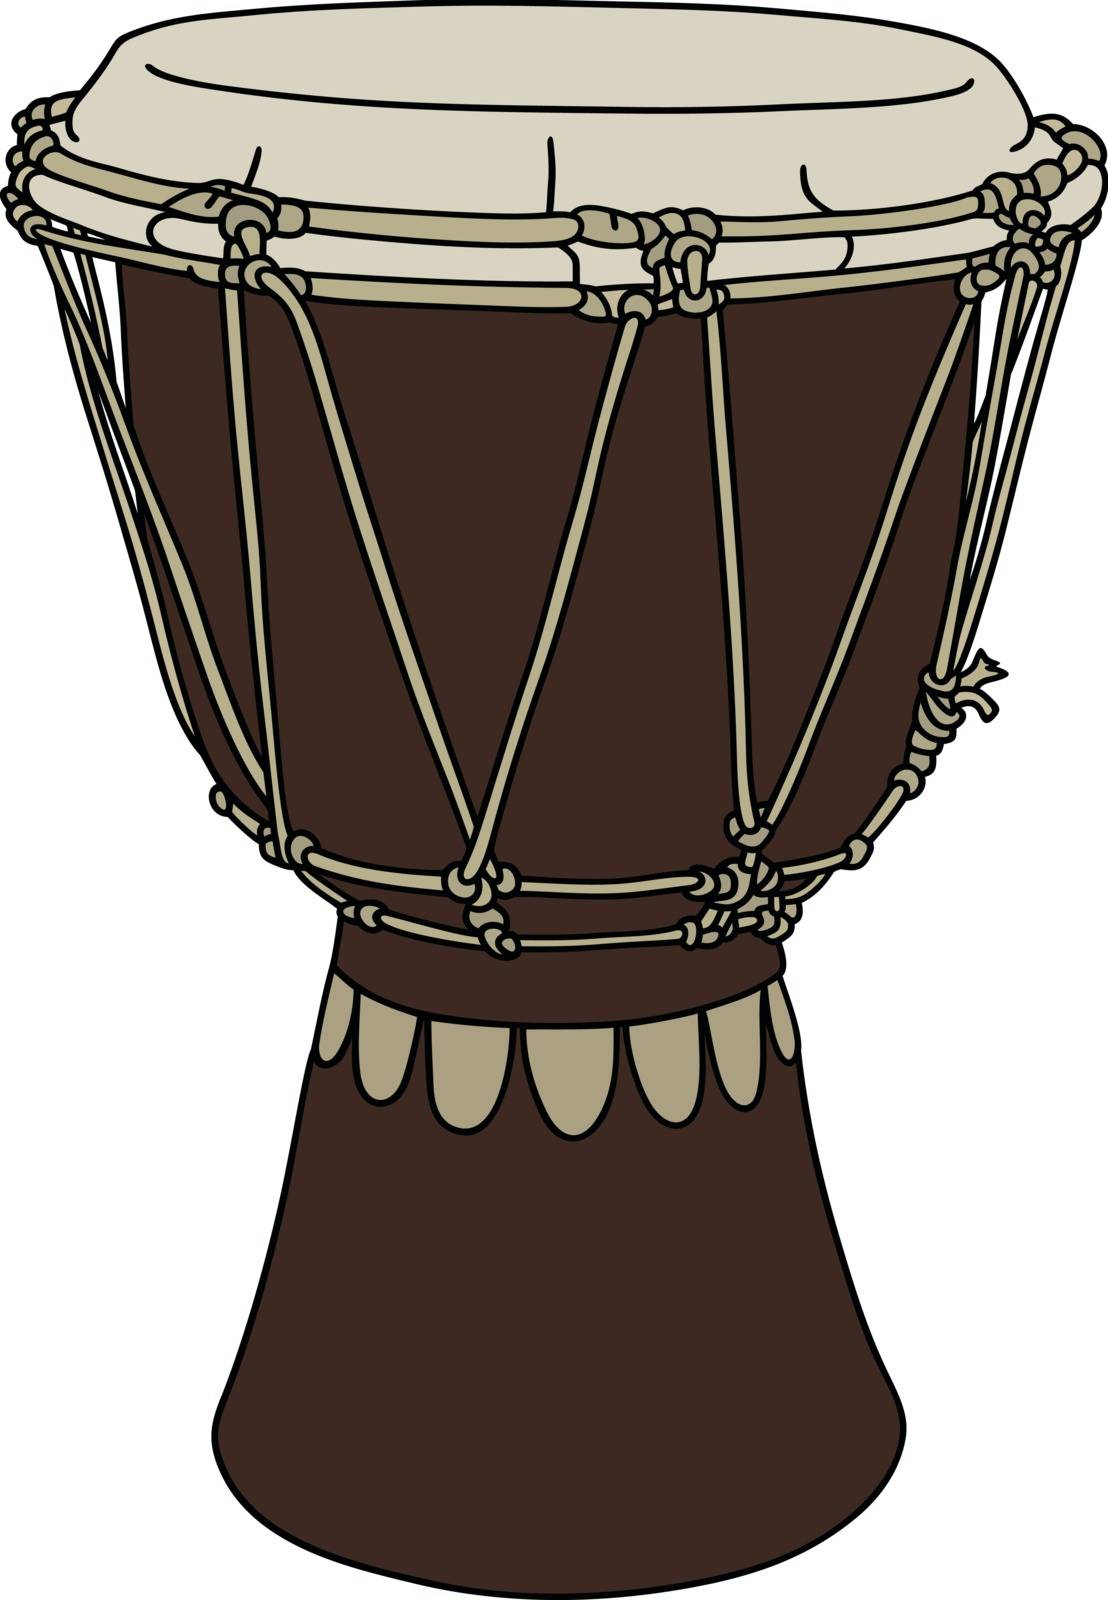 Dark wooden drum by vostal